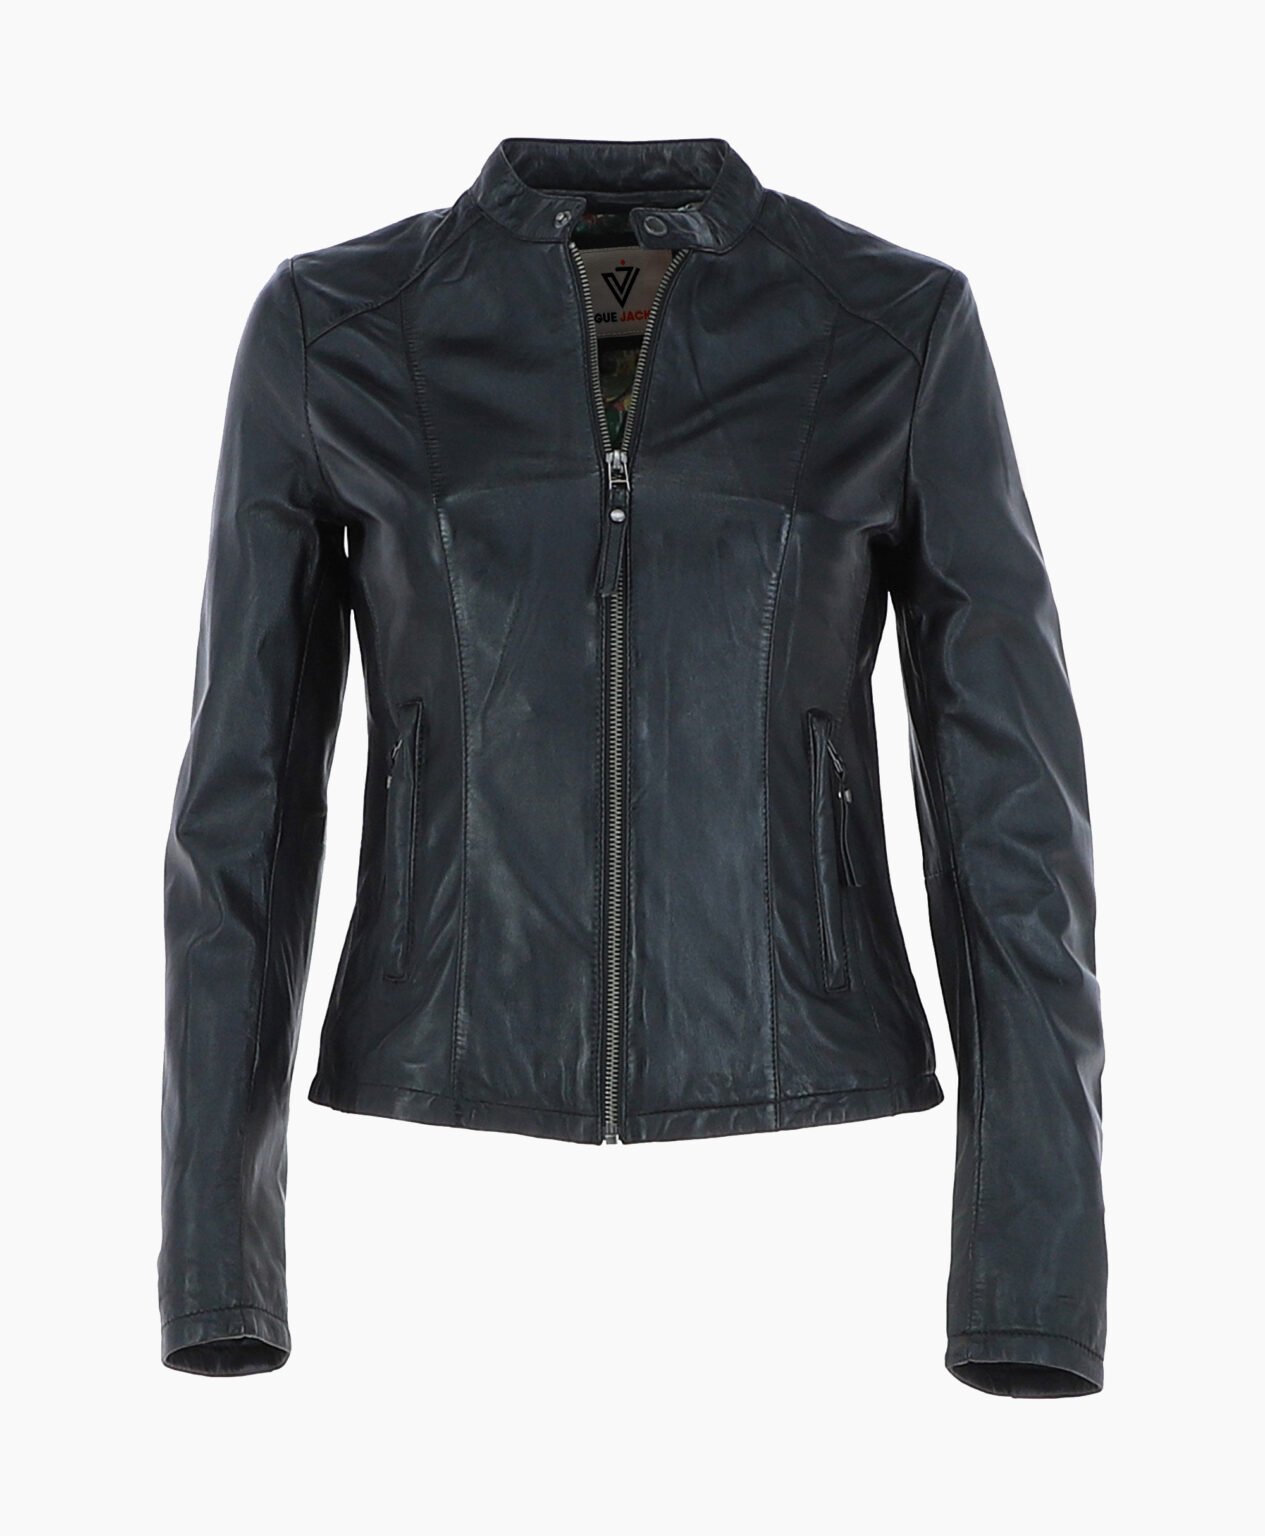 vogue-jacket-leather-biker-jacket-black-cicero-image200